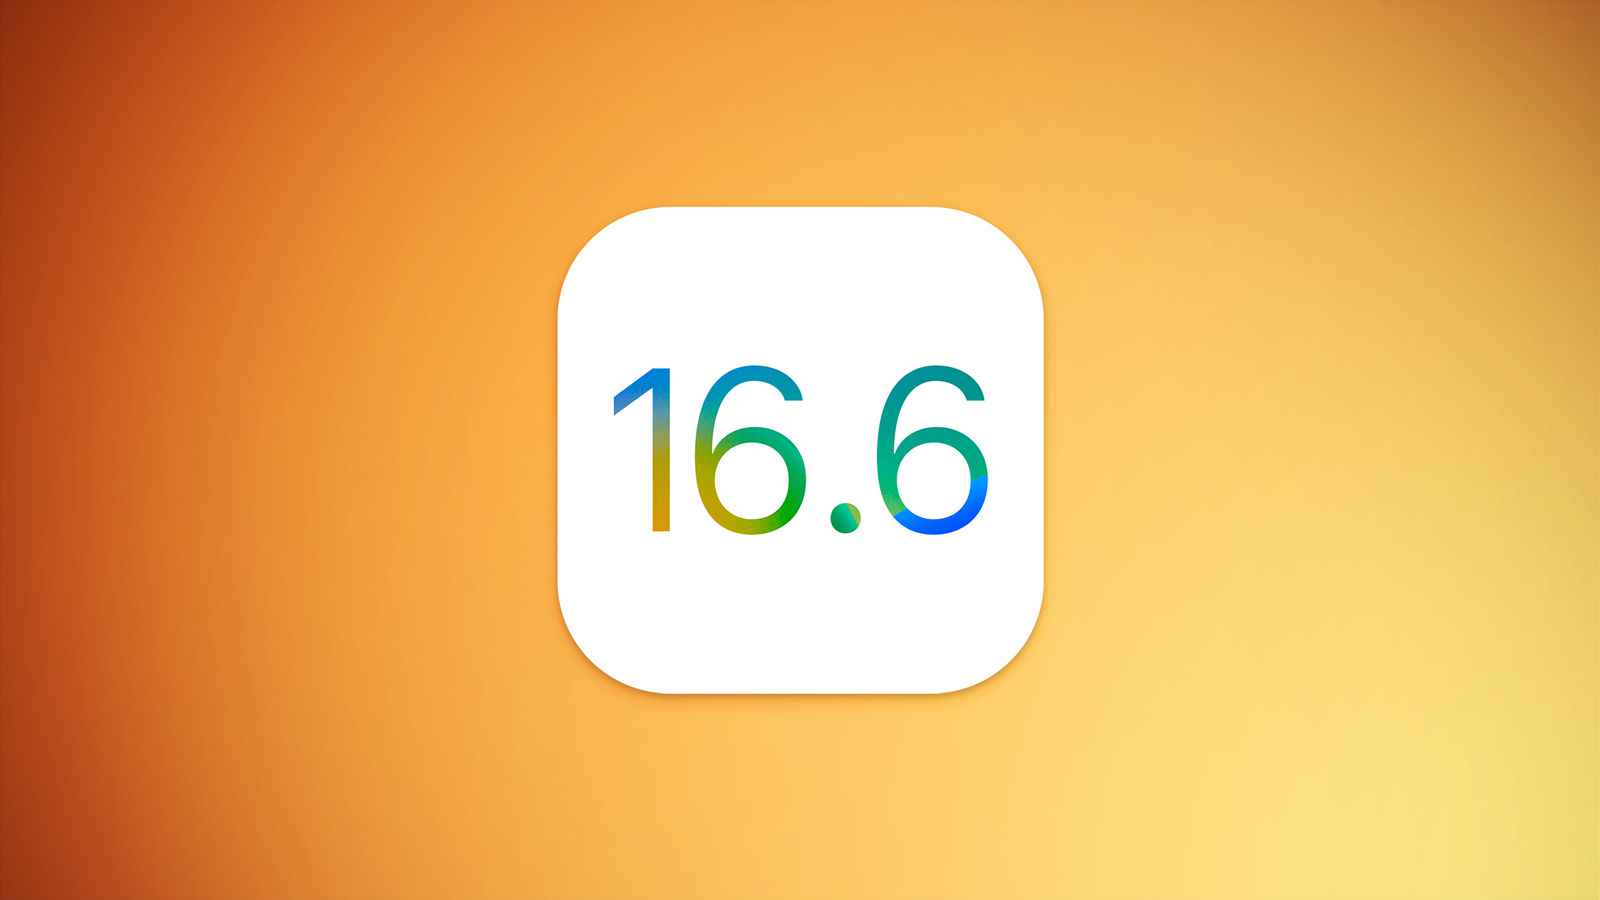 苹果在过去一周加大了对iOS 16.6的内部测试-Applehub-心动论坛